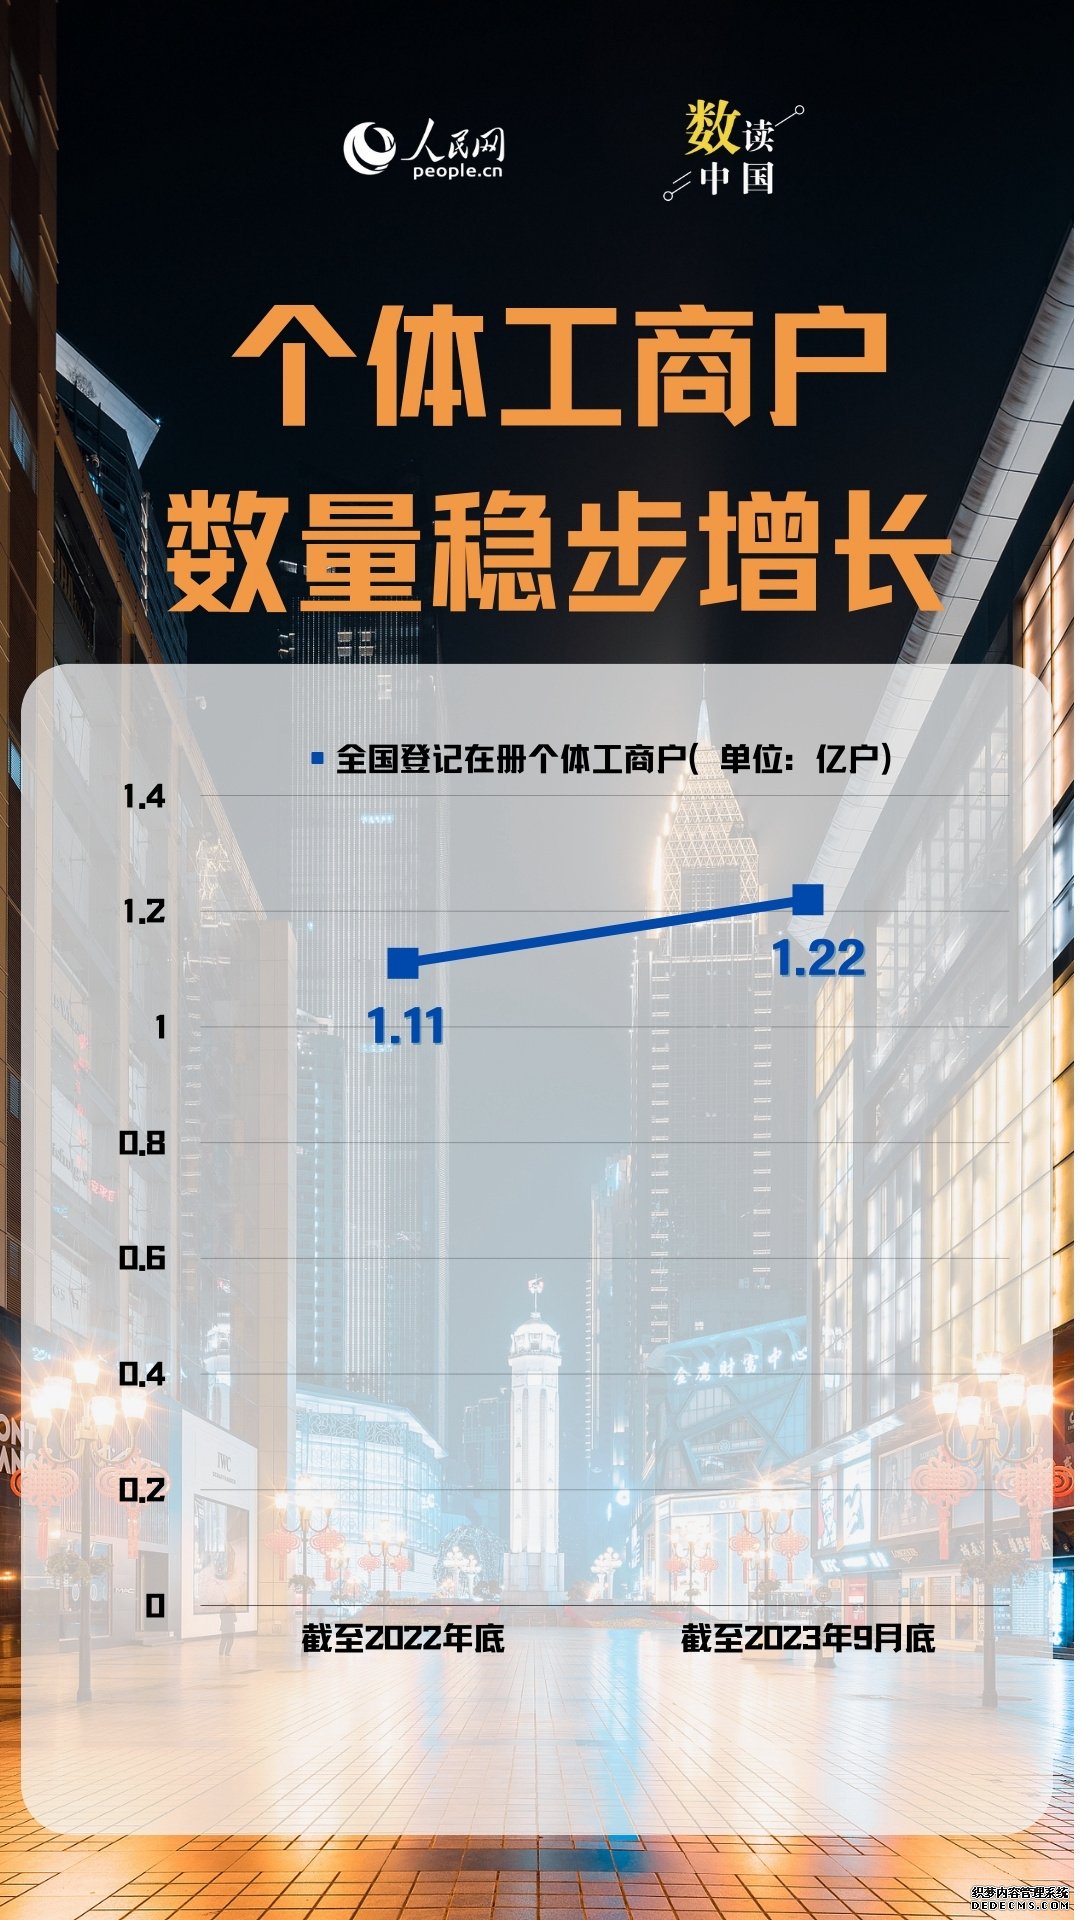 数读中国 | 10组数据一览经济运行回升向好态势